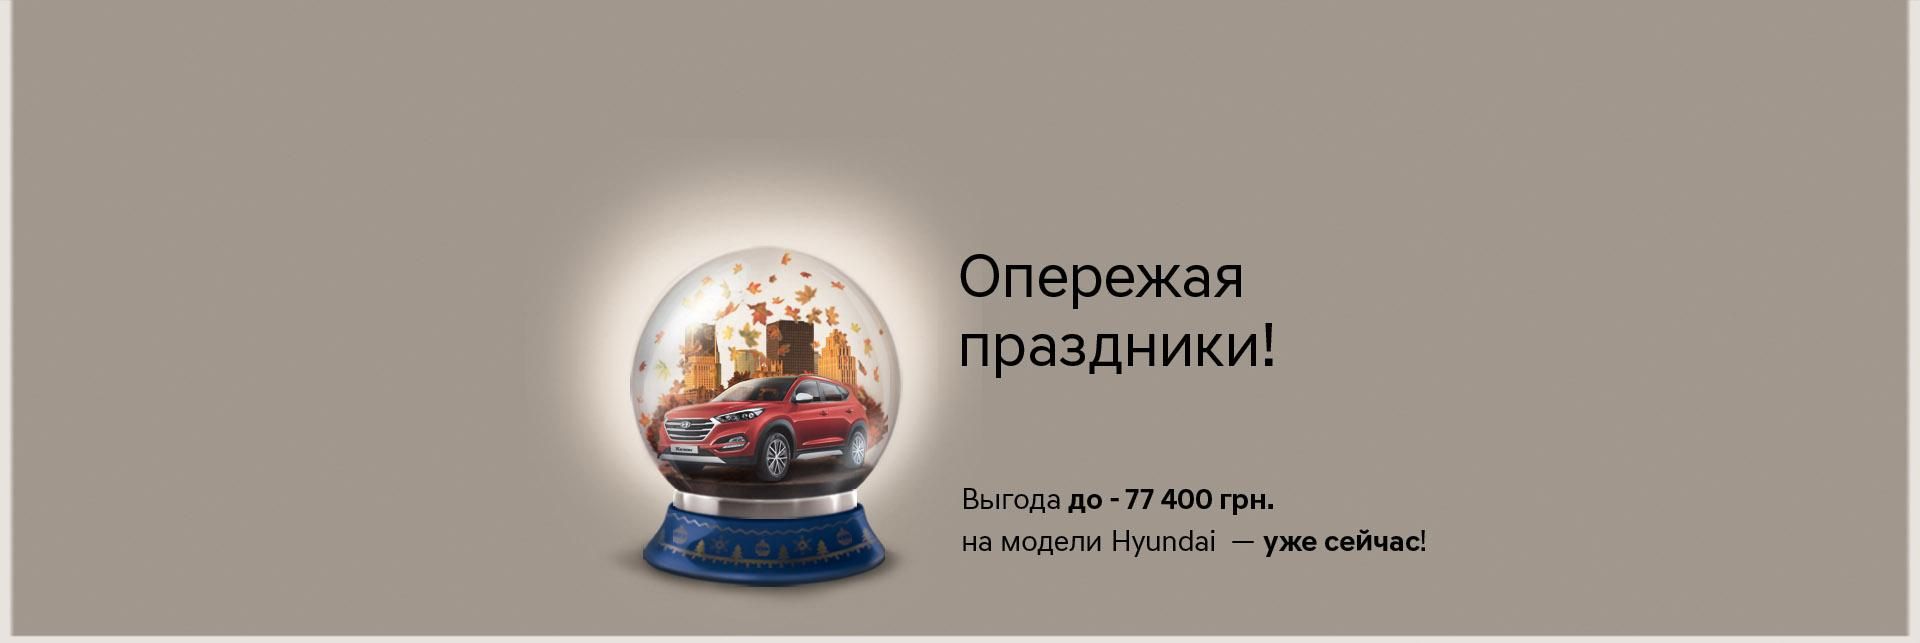 HYUNDAI в Украине: покупать автомобили в октябре выгодно! - 27 октября 2016 - Телеканал новин 24